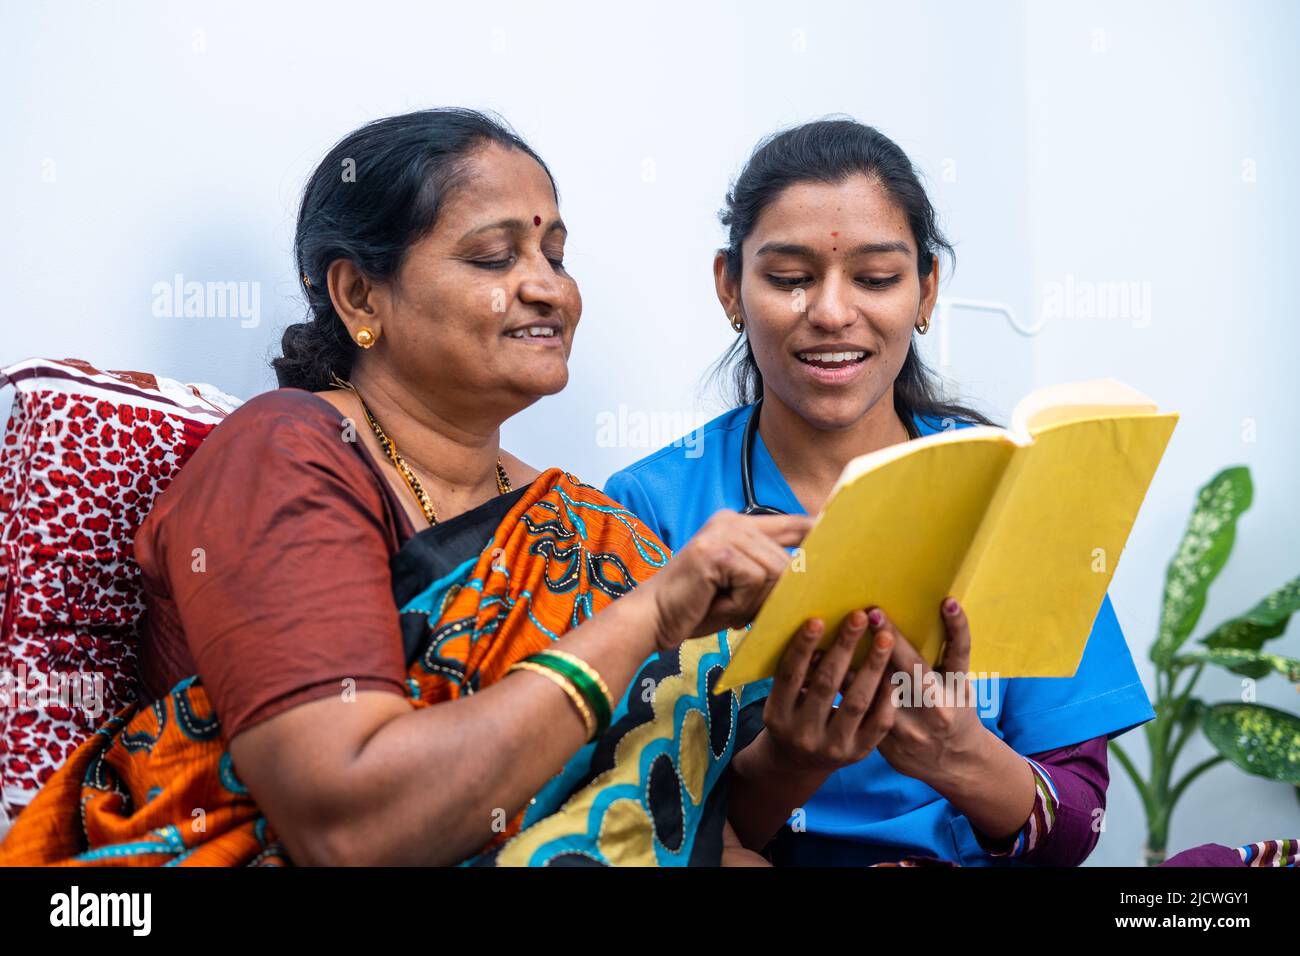 Krankenschwester und kranke Frauen lachen, indem sie die Geschichte aus dem Buch zu Hause lesen - Konzept der Entspannung, Glück und Fürsorge. Stockfoto